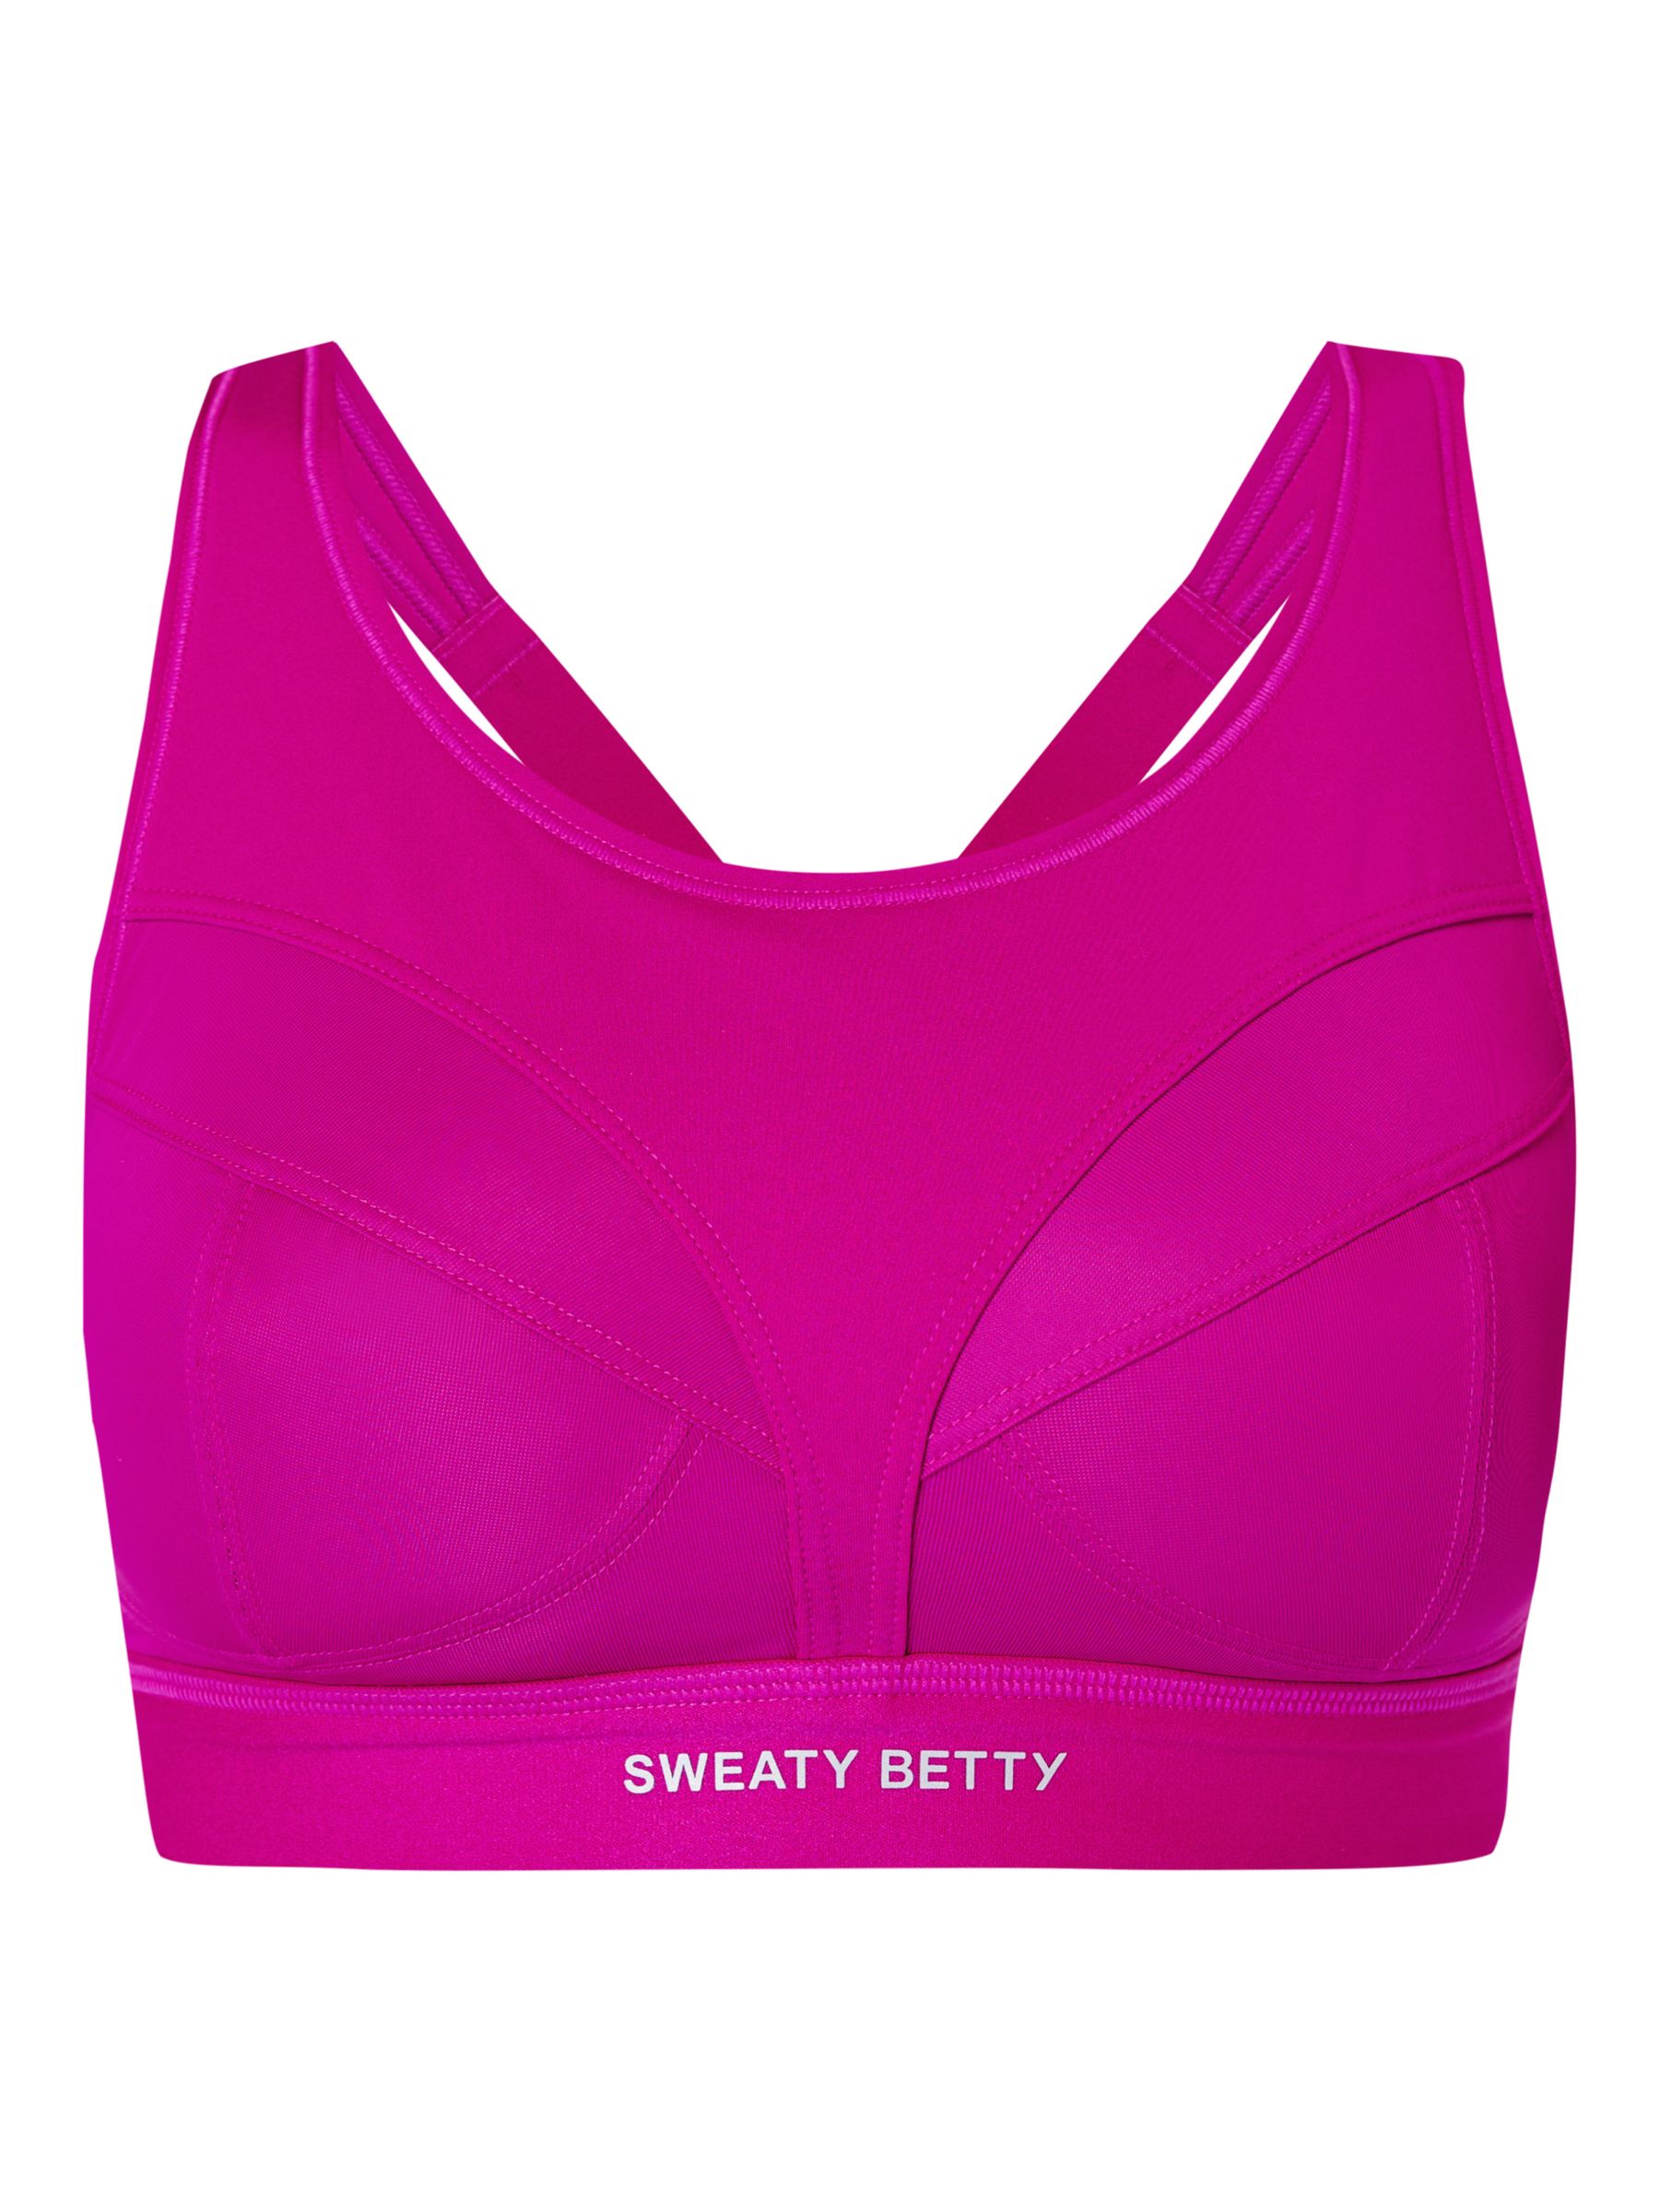 Buy Sweaty Betty Power Pro Running Bra Online at johnlewis.com